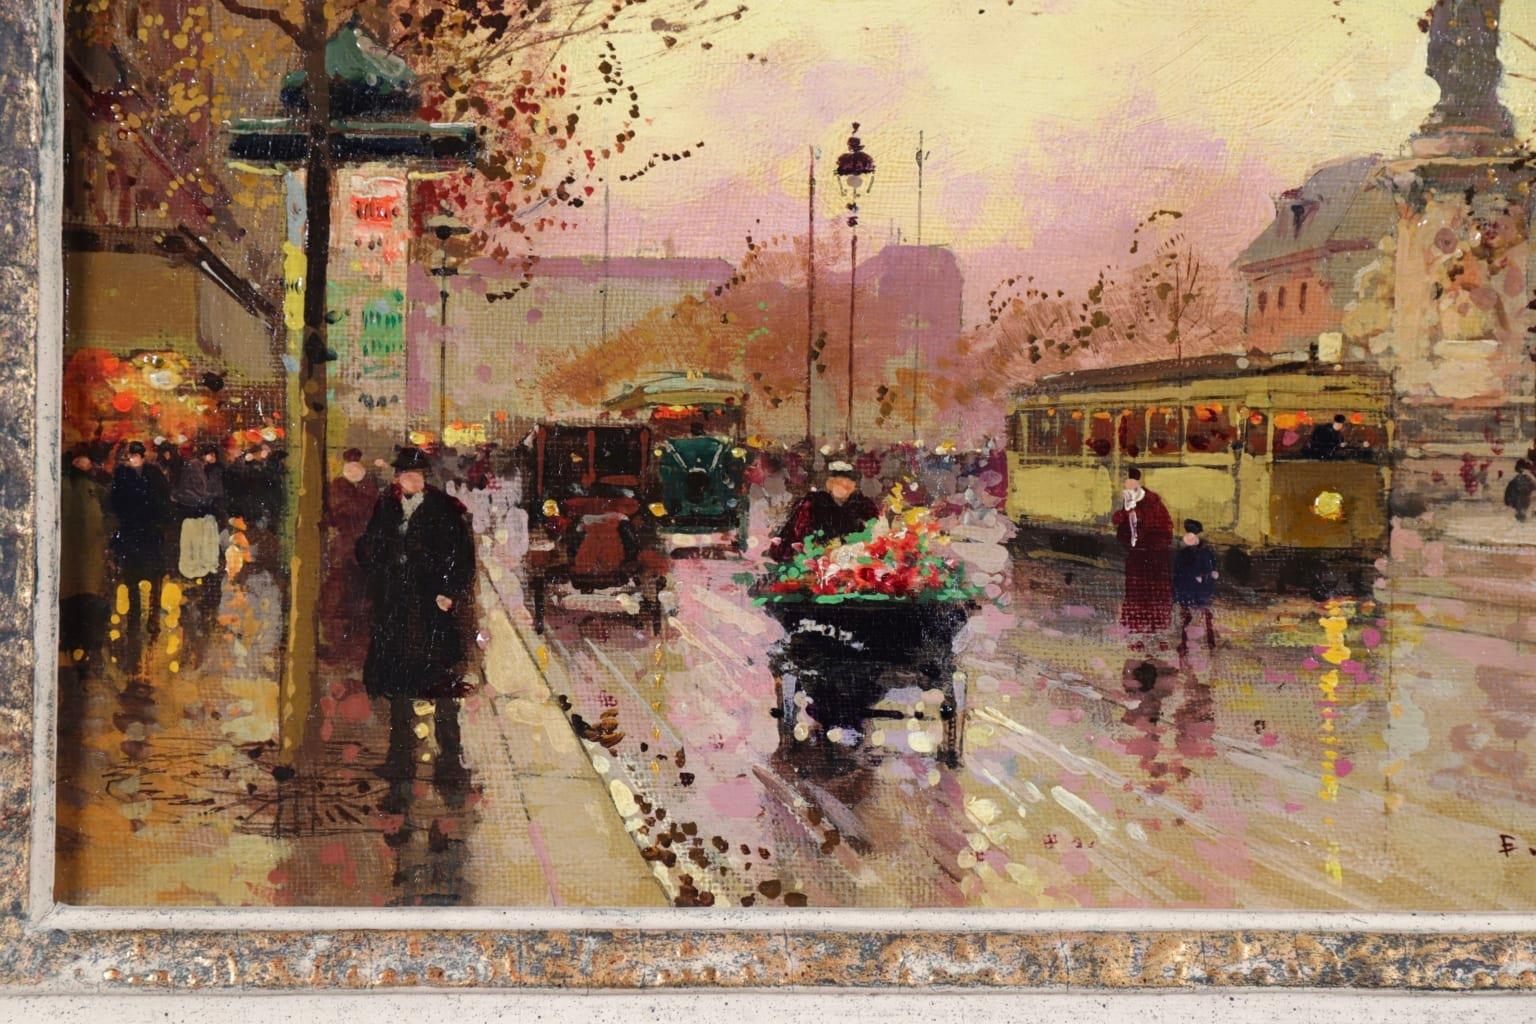 Place de la Republique - Impressionist Oil, Figures - Cityscape - Edouard Cortes - Brown Figurative Painting by Édouard Leon Cortès